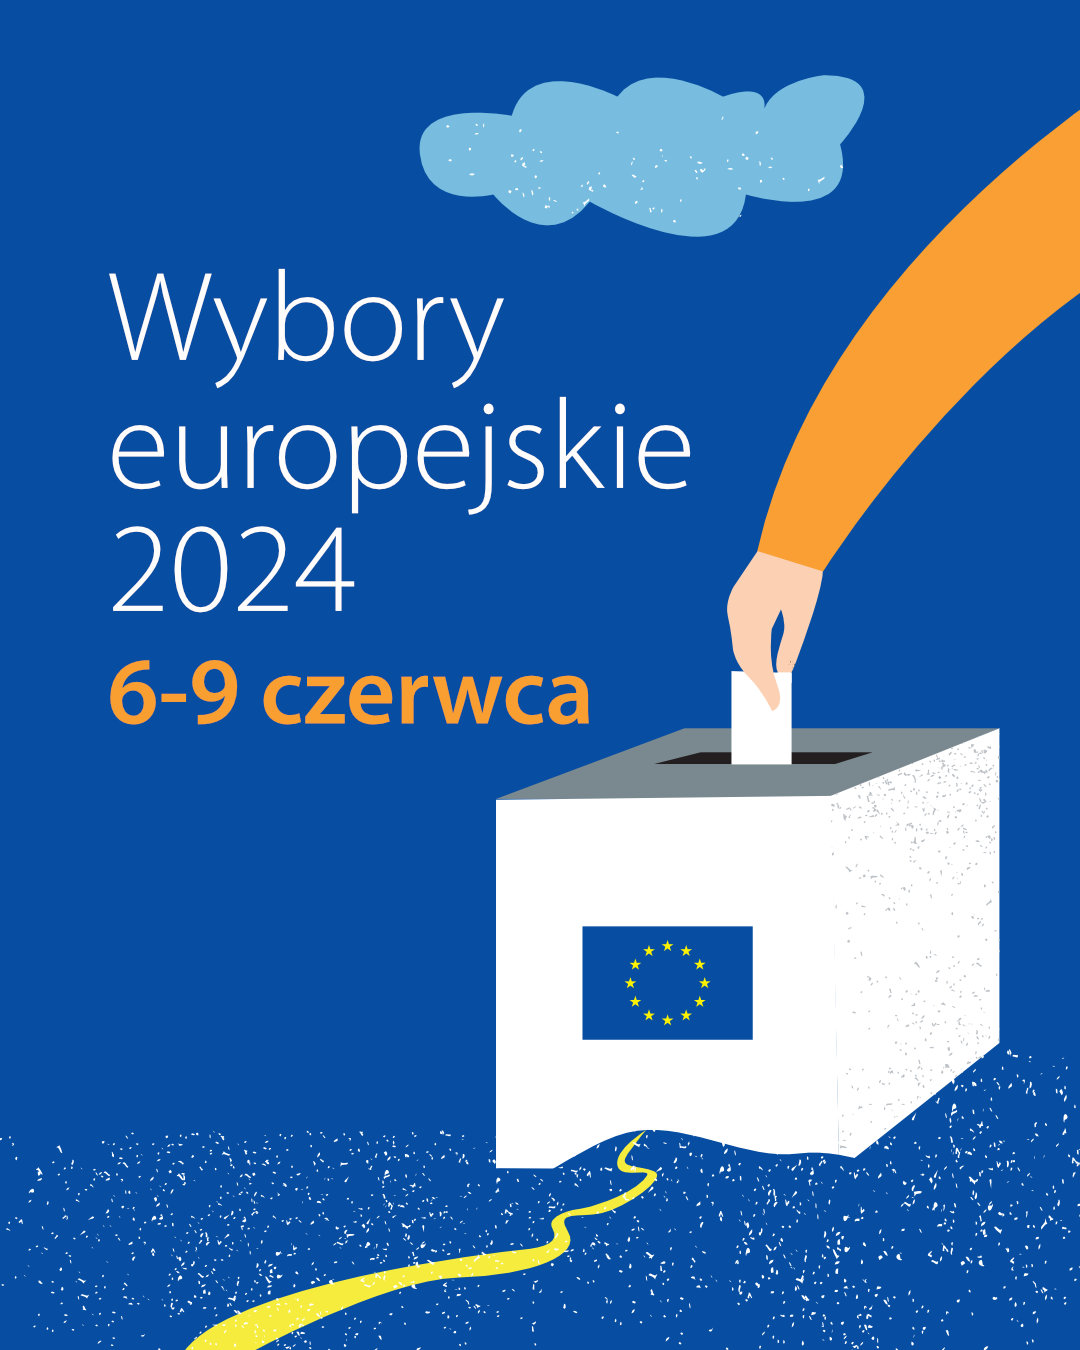 Wybory europejskie 2024 - 4:5.jpg